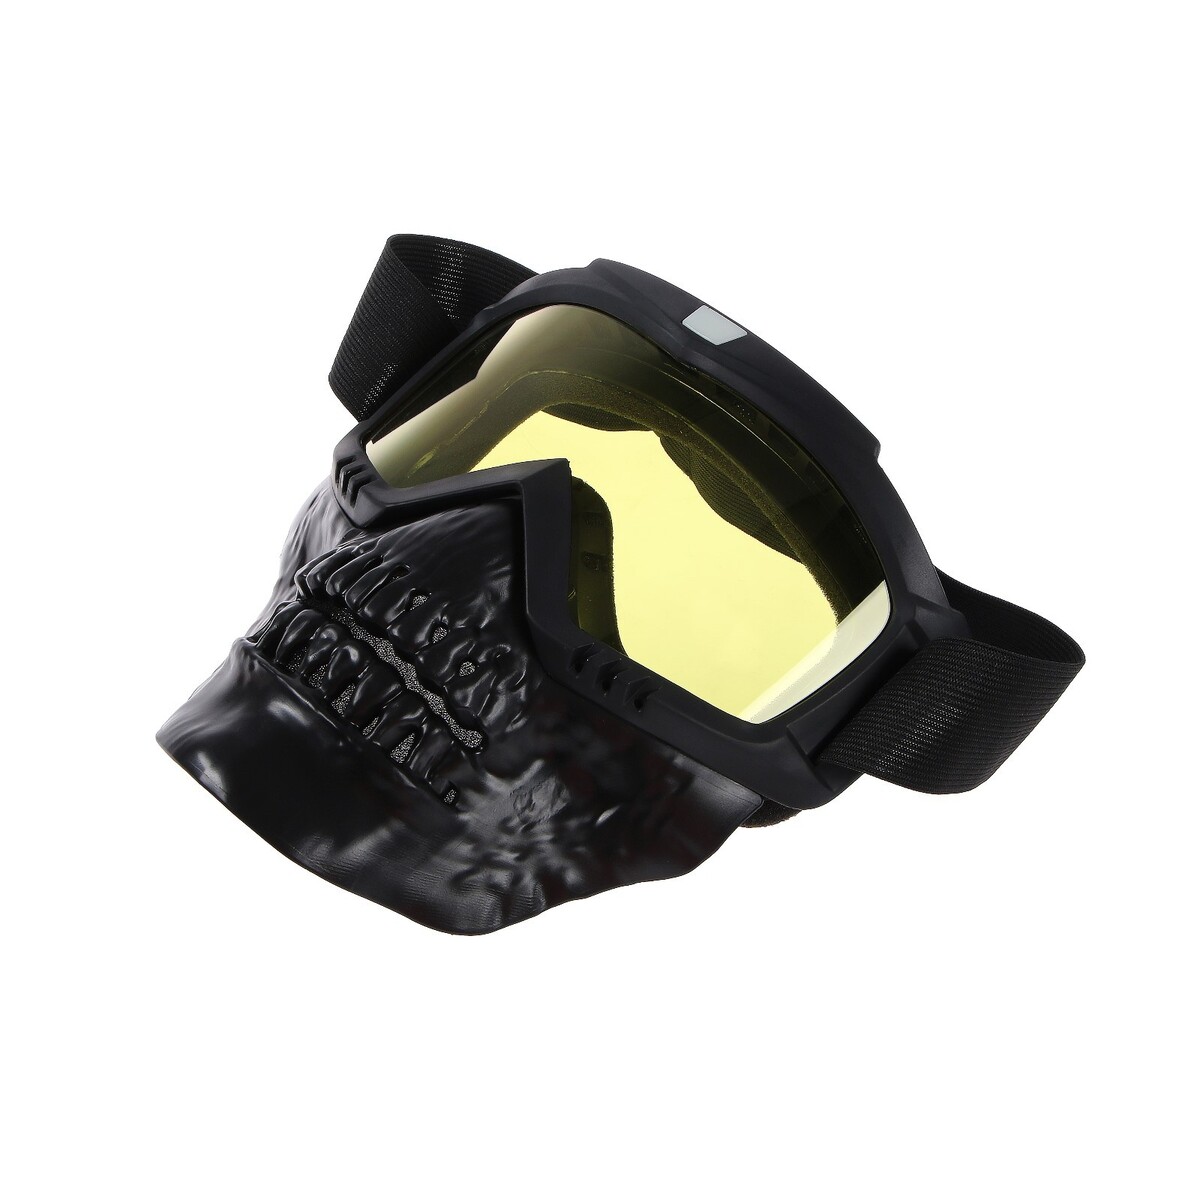 Очки-маска для езды на мототехнике, разборные, визор желтый, цвет черный очки маска для езды на мототехнике разборные визор прозрачный